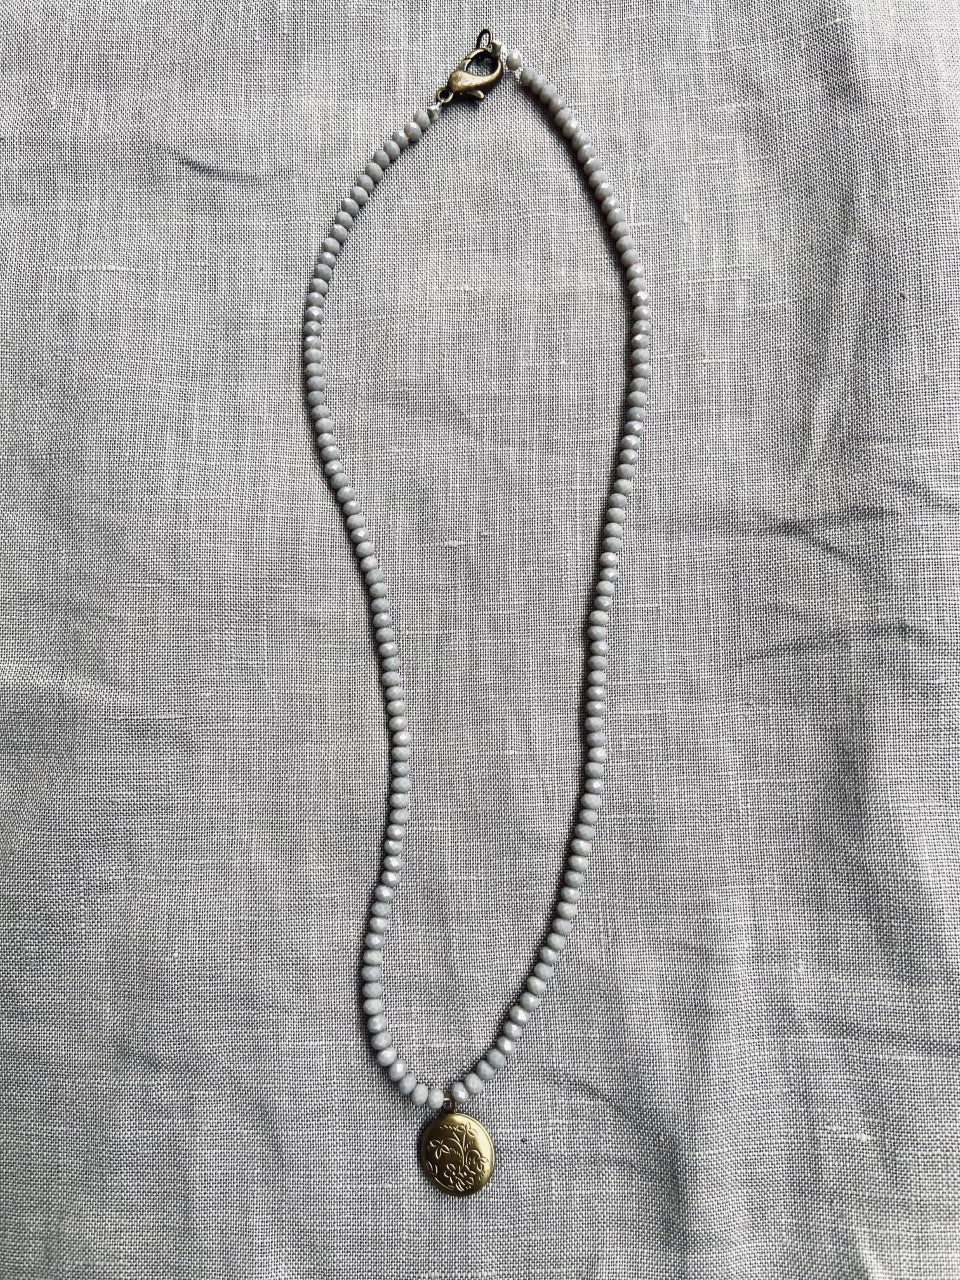 238104 Antique pendant necklace